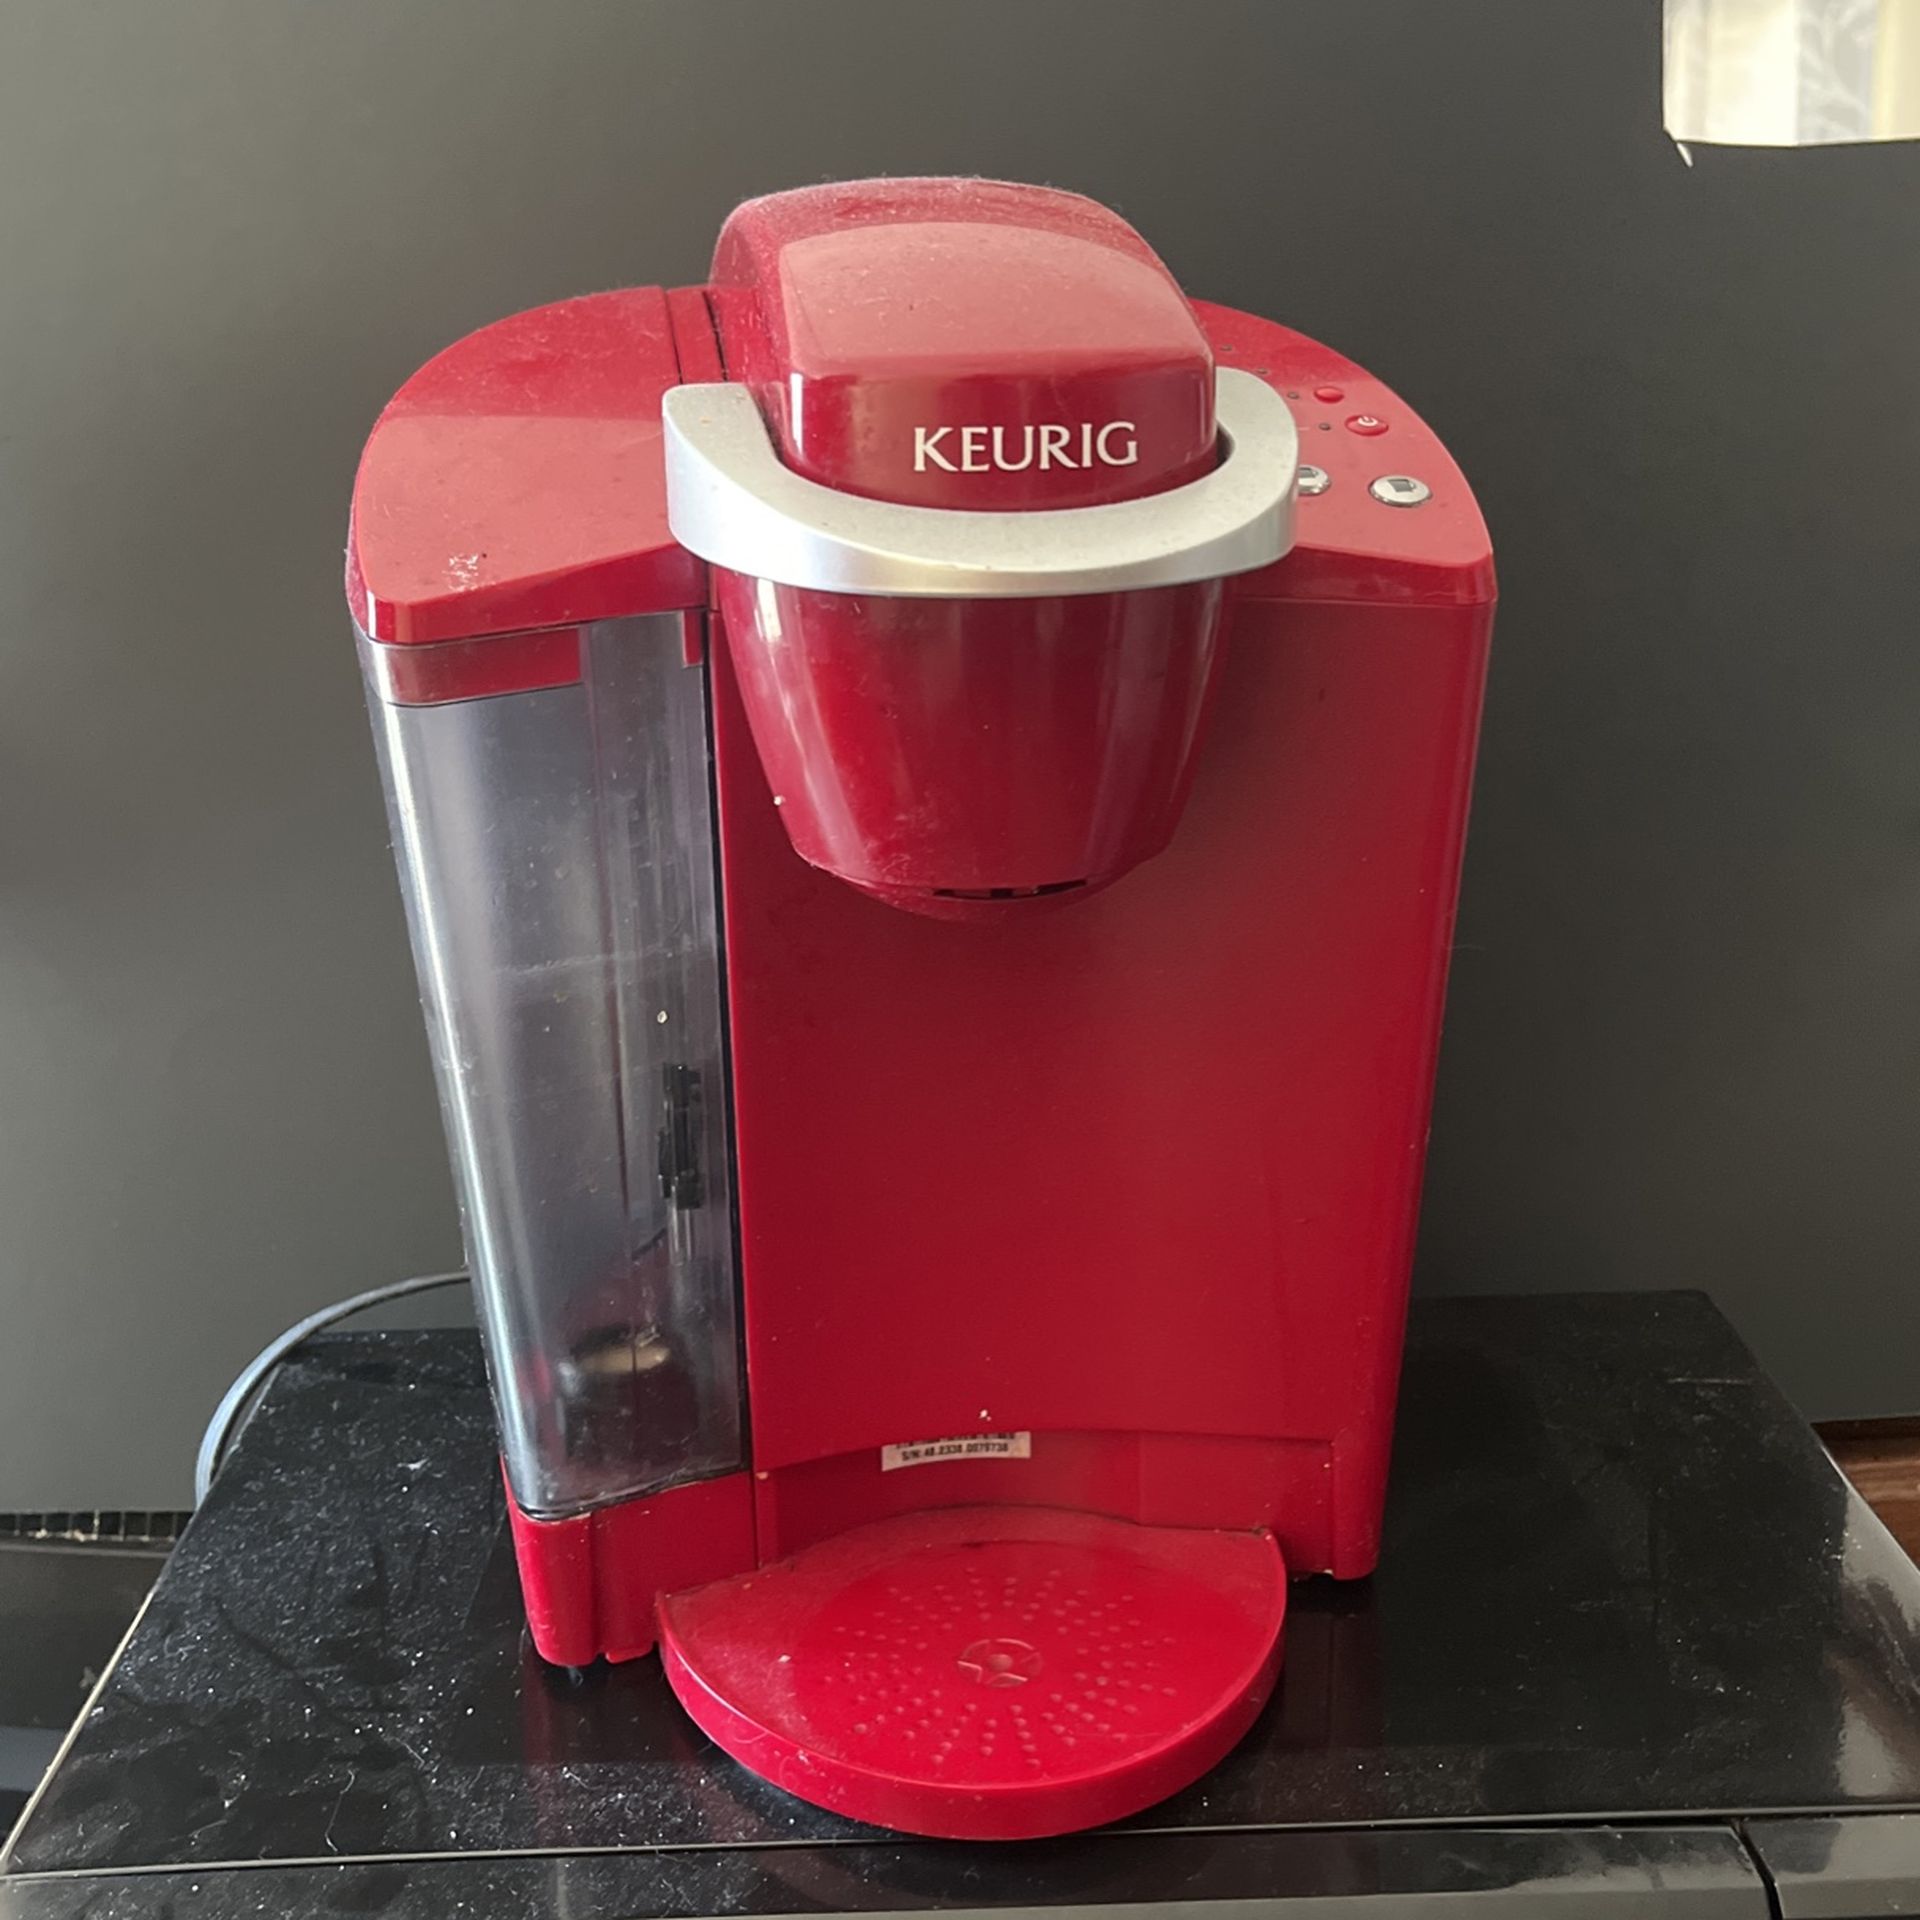 Keurig Coffee Maker And Microwave 